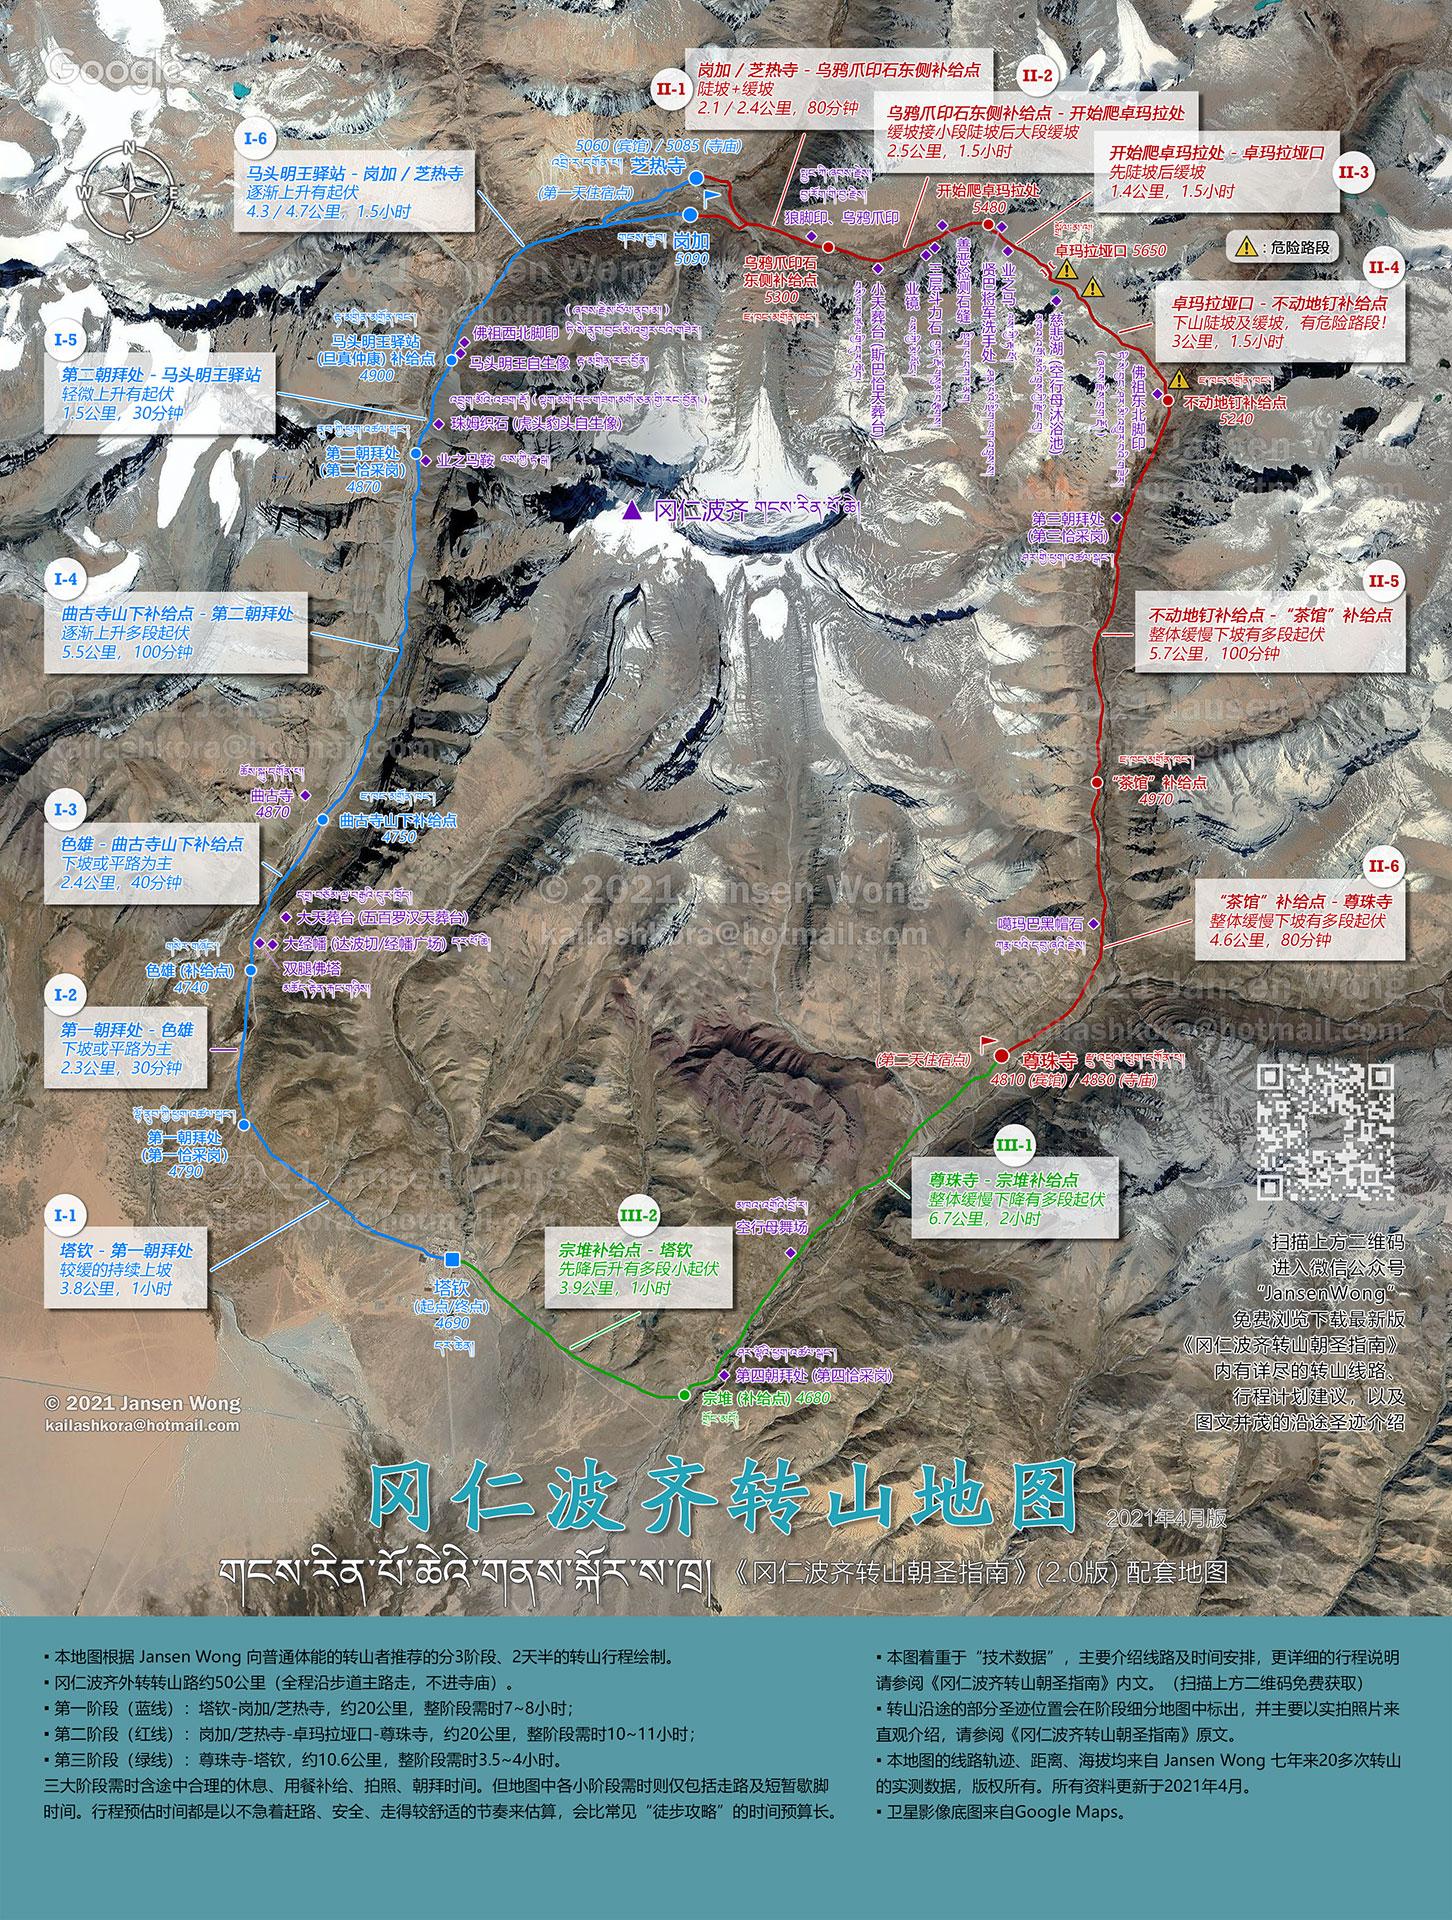 西藏朋曲流域不同地貌部位流动沙丘粒度特征